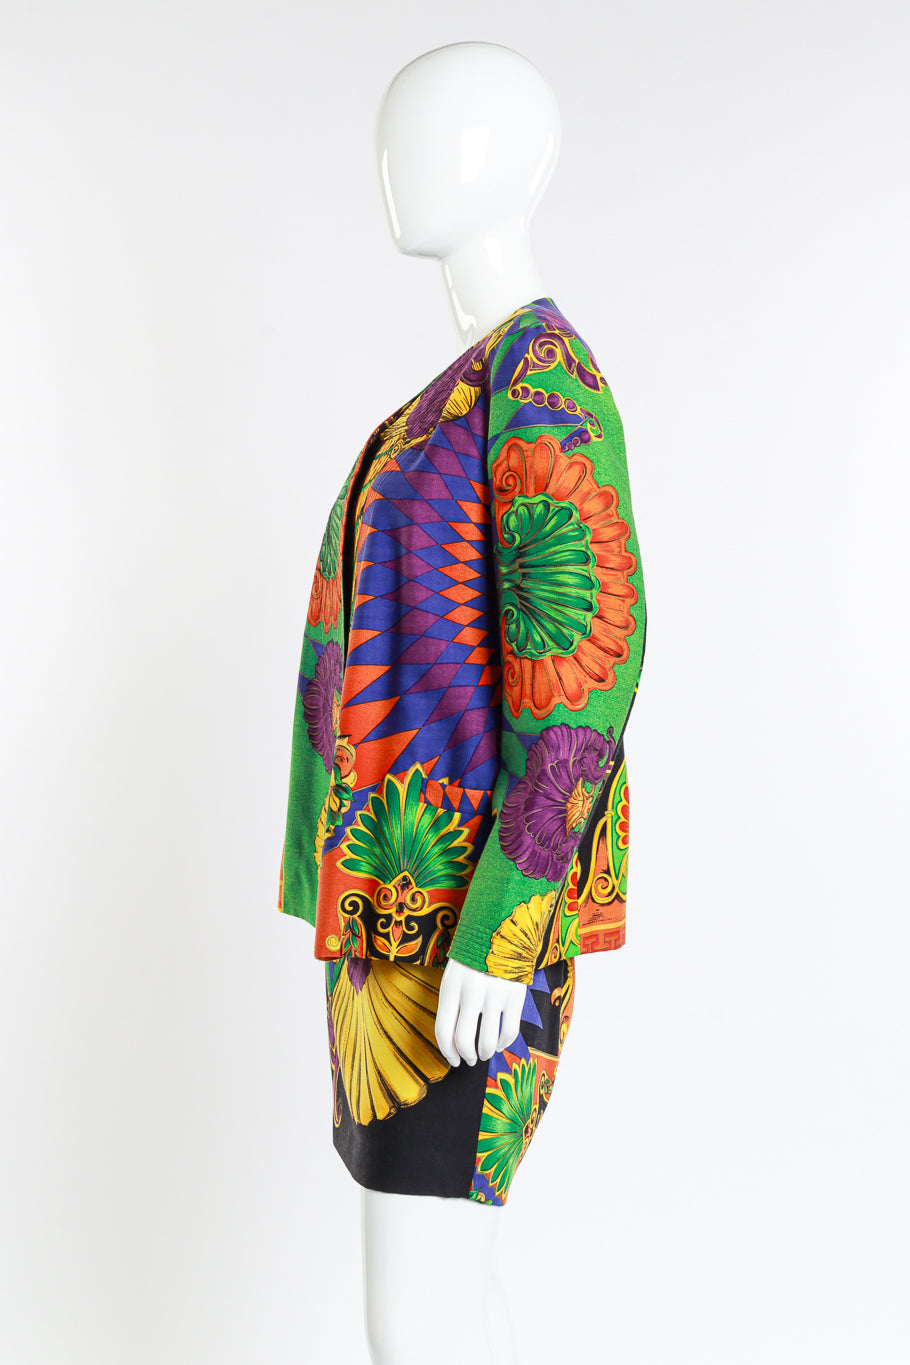 Versace 1991 Cornucopia of Prints Skirt Suit side mannequin @RECESS LA